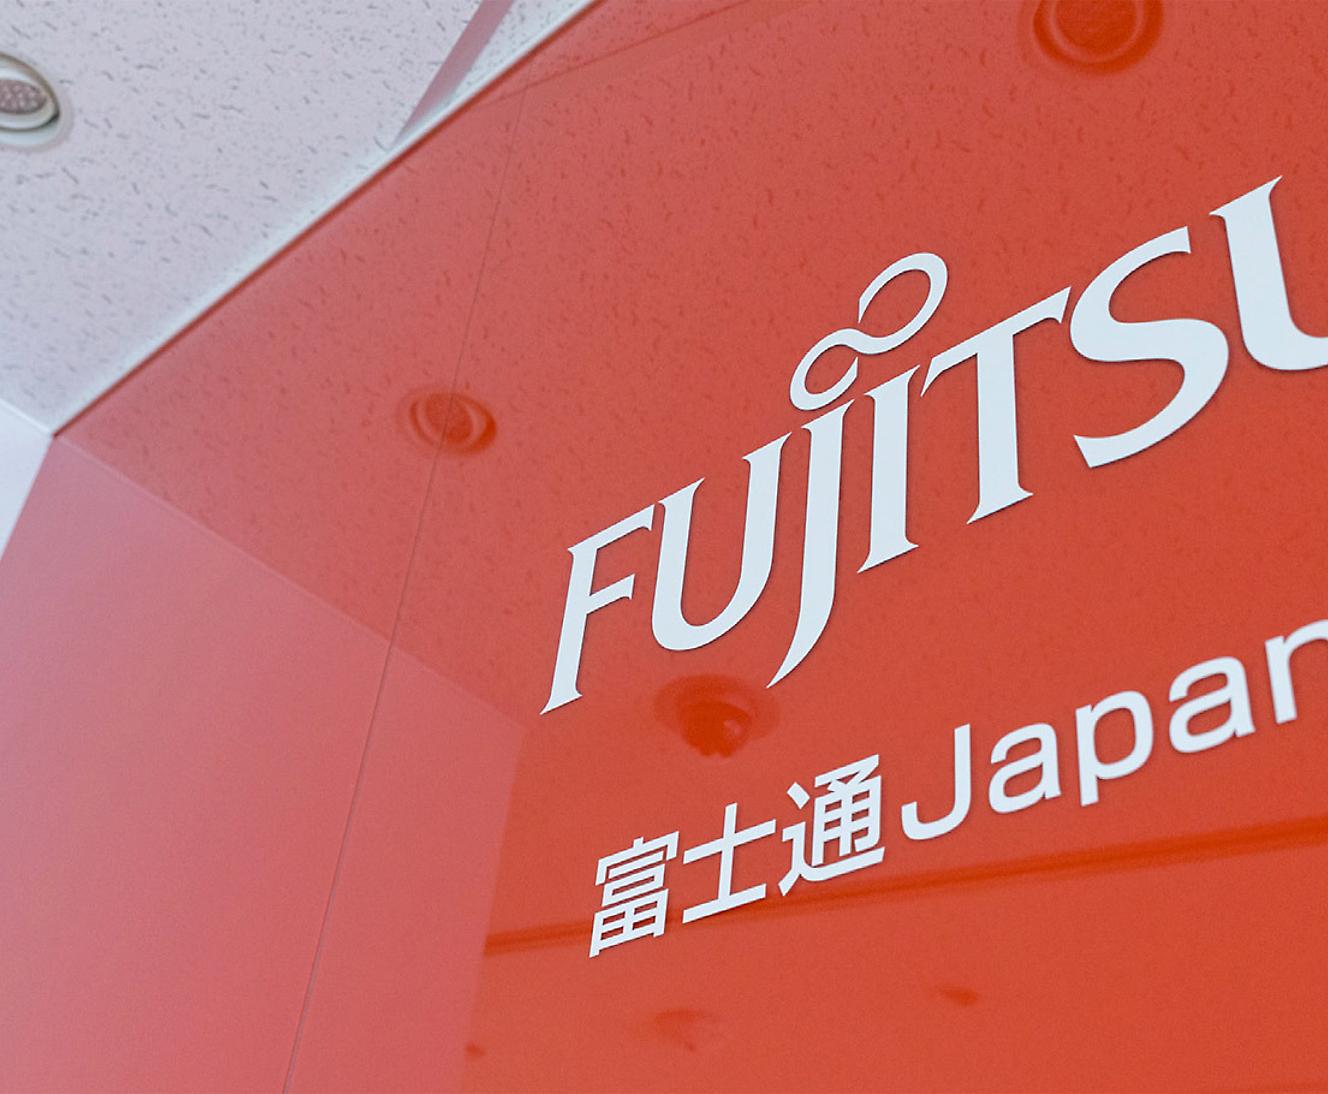 Primer plano parcial de un cartel de Fujitsu con logotipo y texto en japonés sobre un fondo rojo, perspectiva en ángulo 